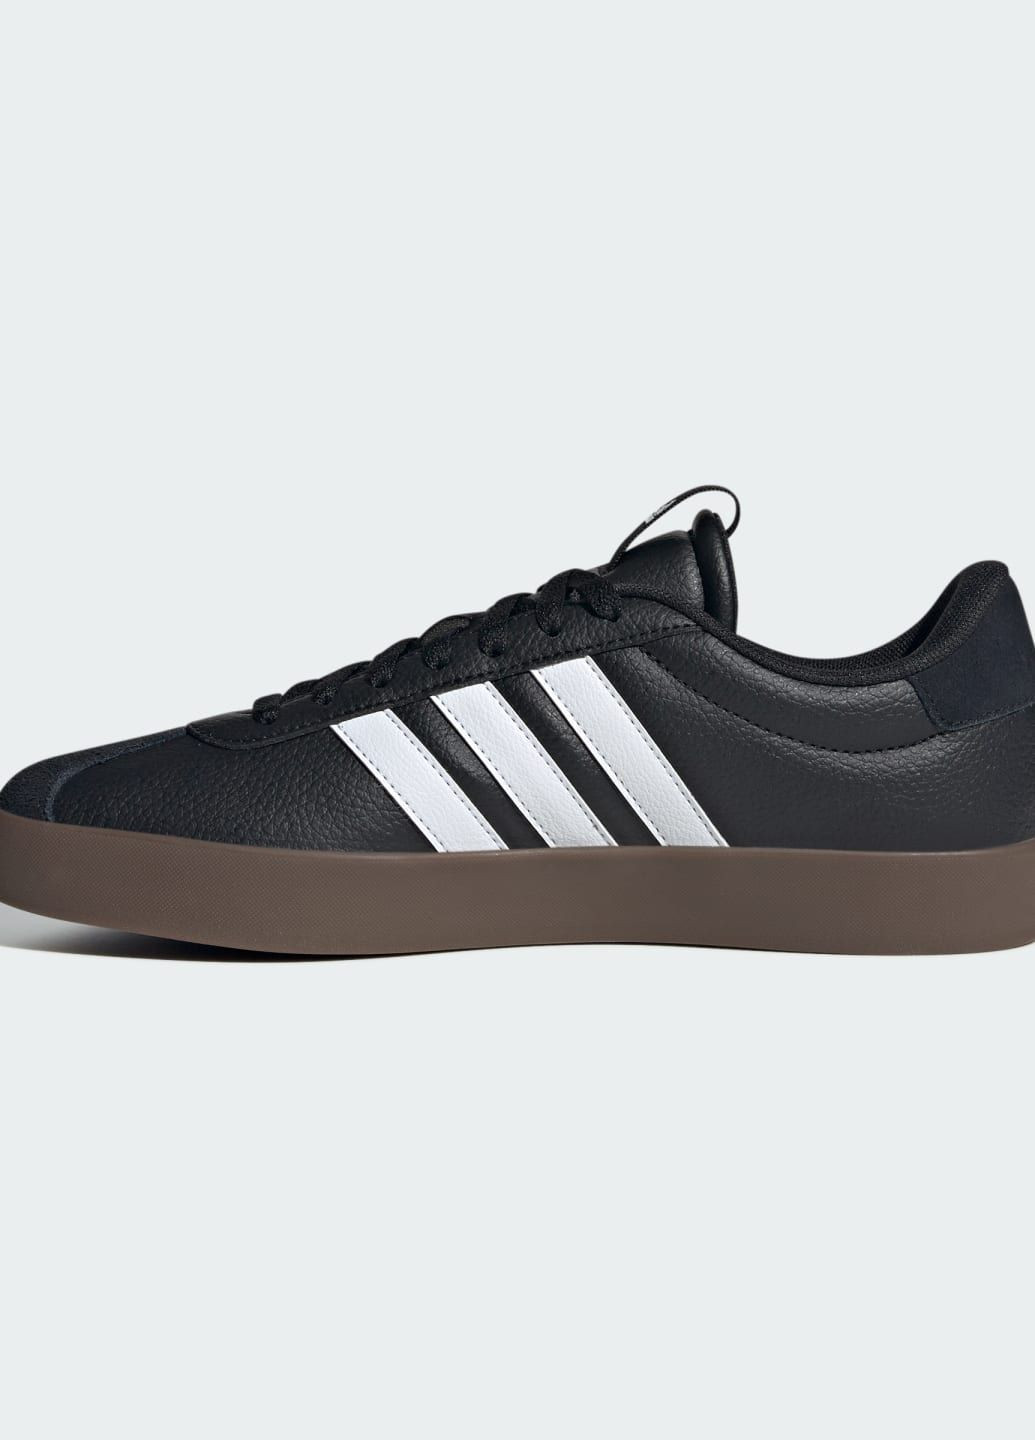 Черные всесезонные кроссовки vl court 3.0 adidas